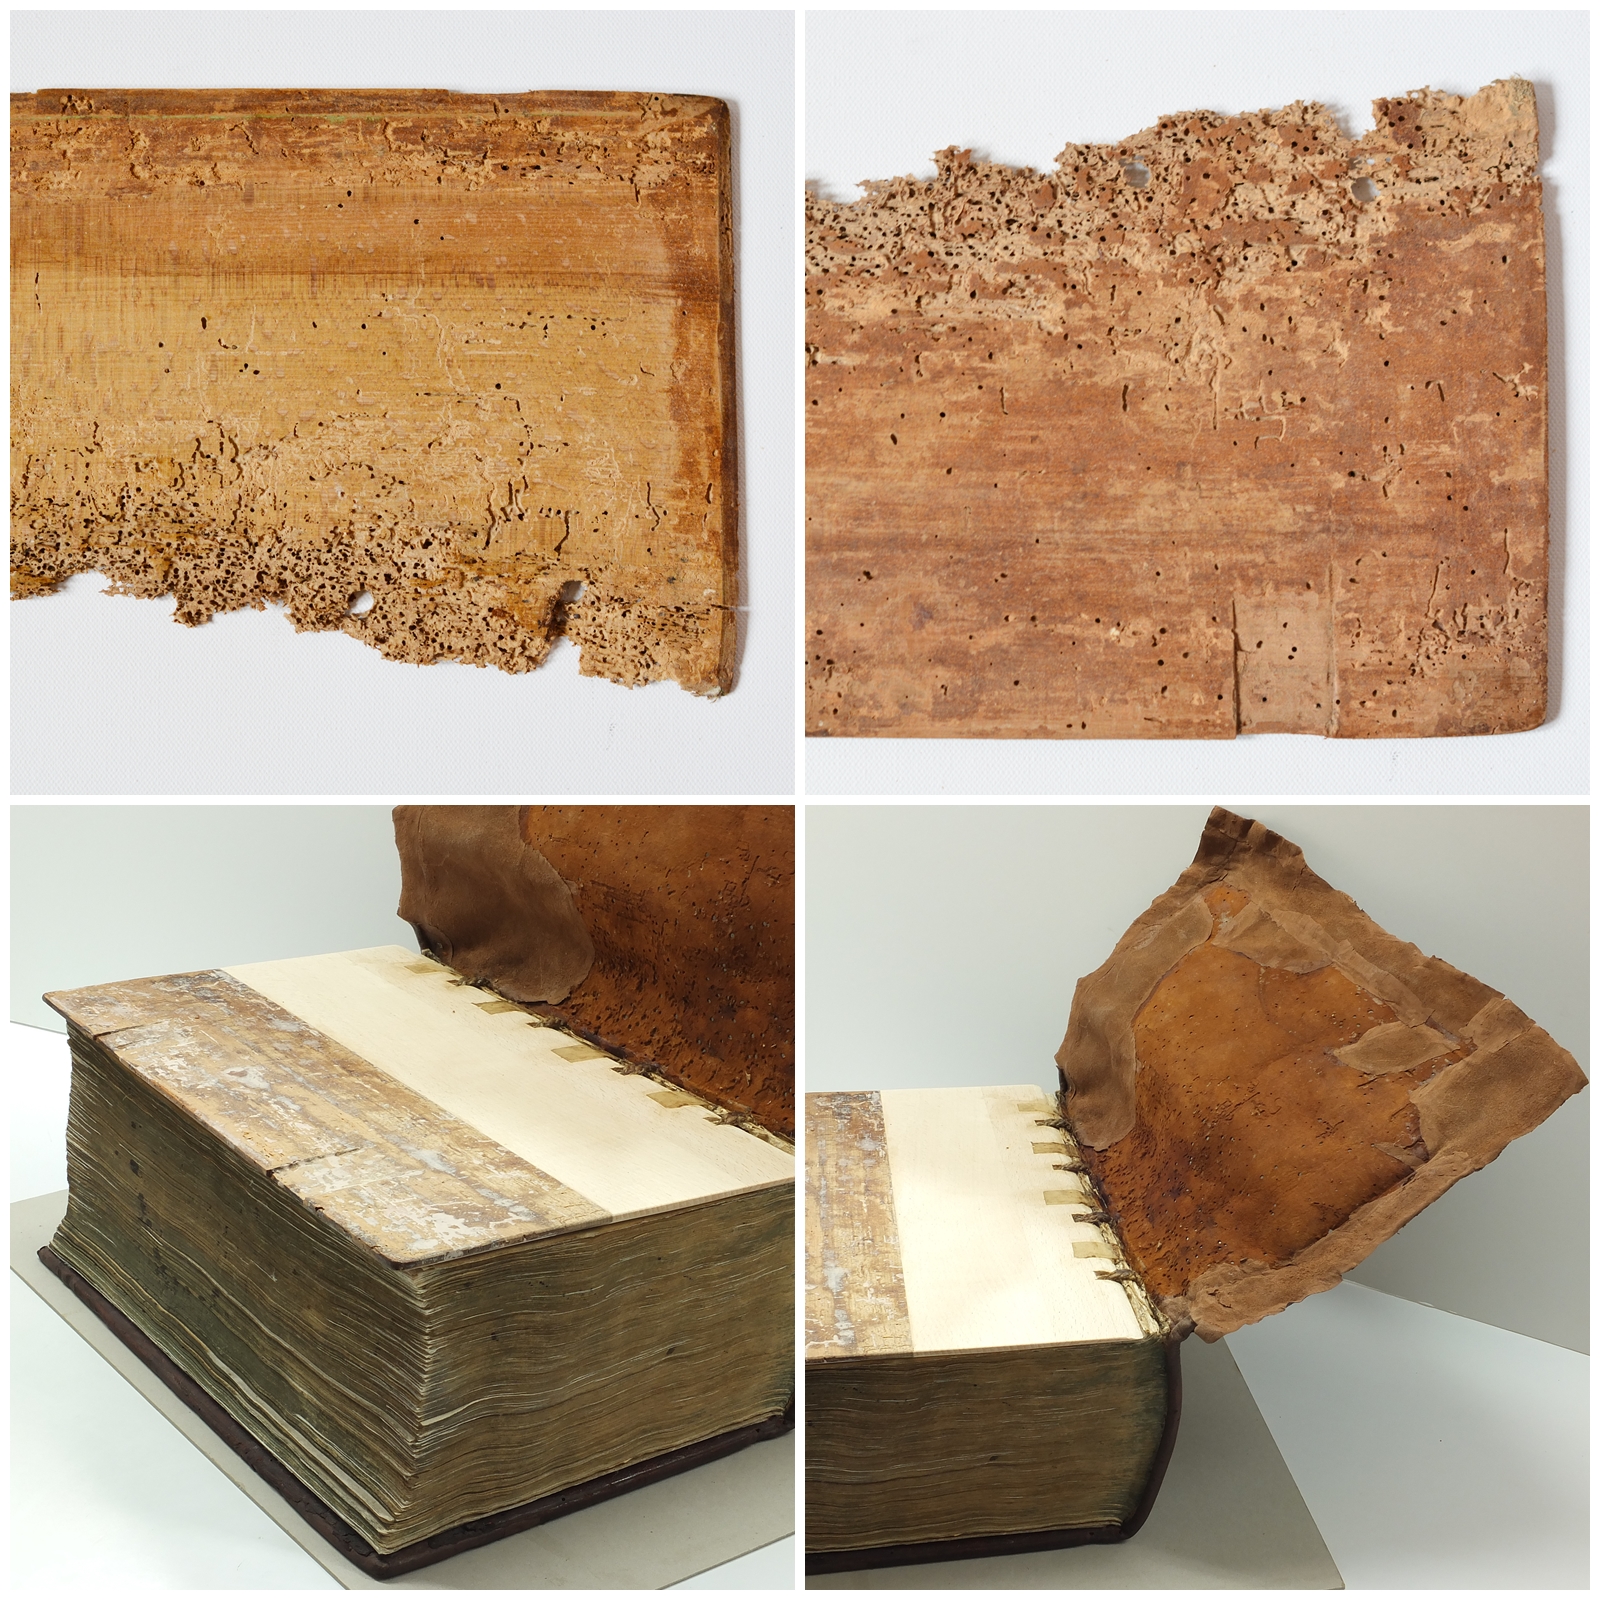 Kilka ujęć księgi z oddzielonymi drewnianymi elementami oprawy, z widocznymi dziurkami wyżartymi przez robactwo.